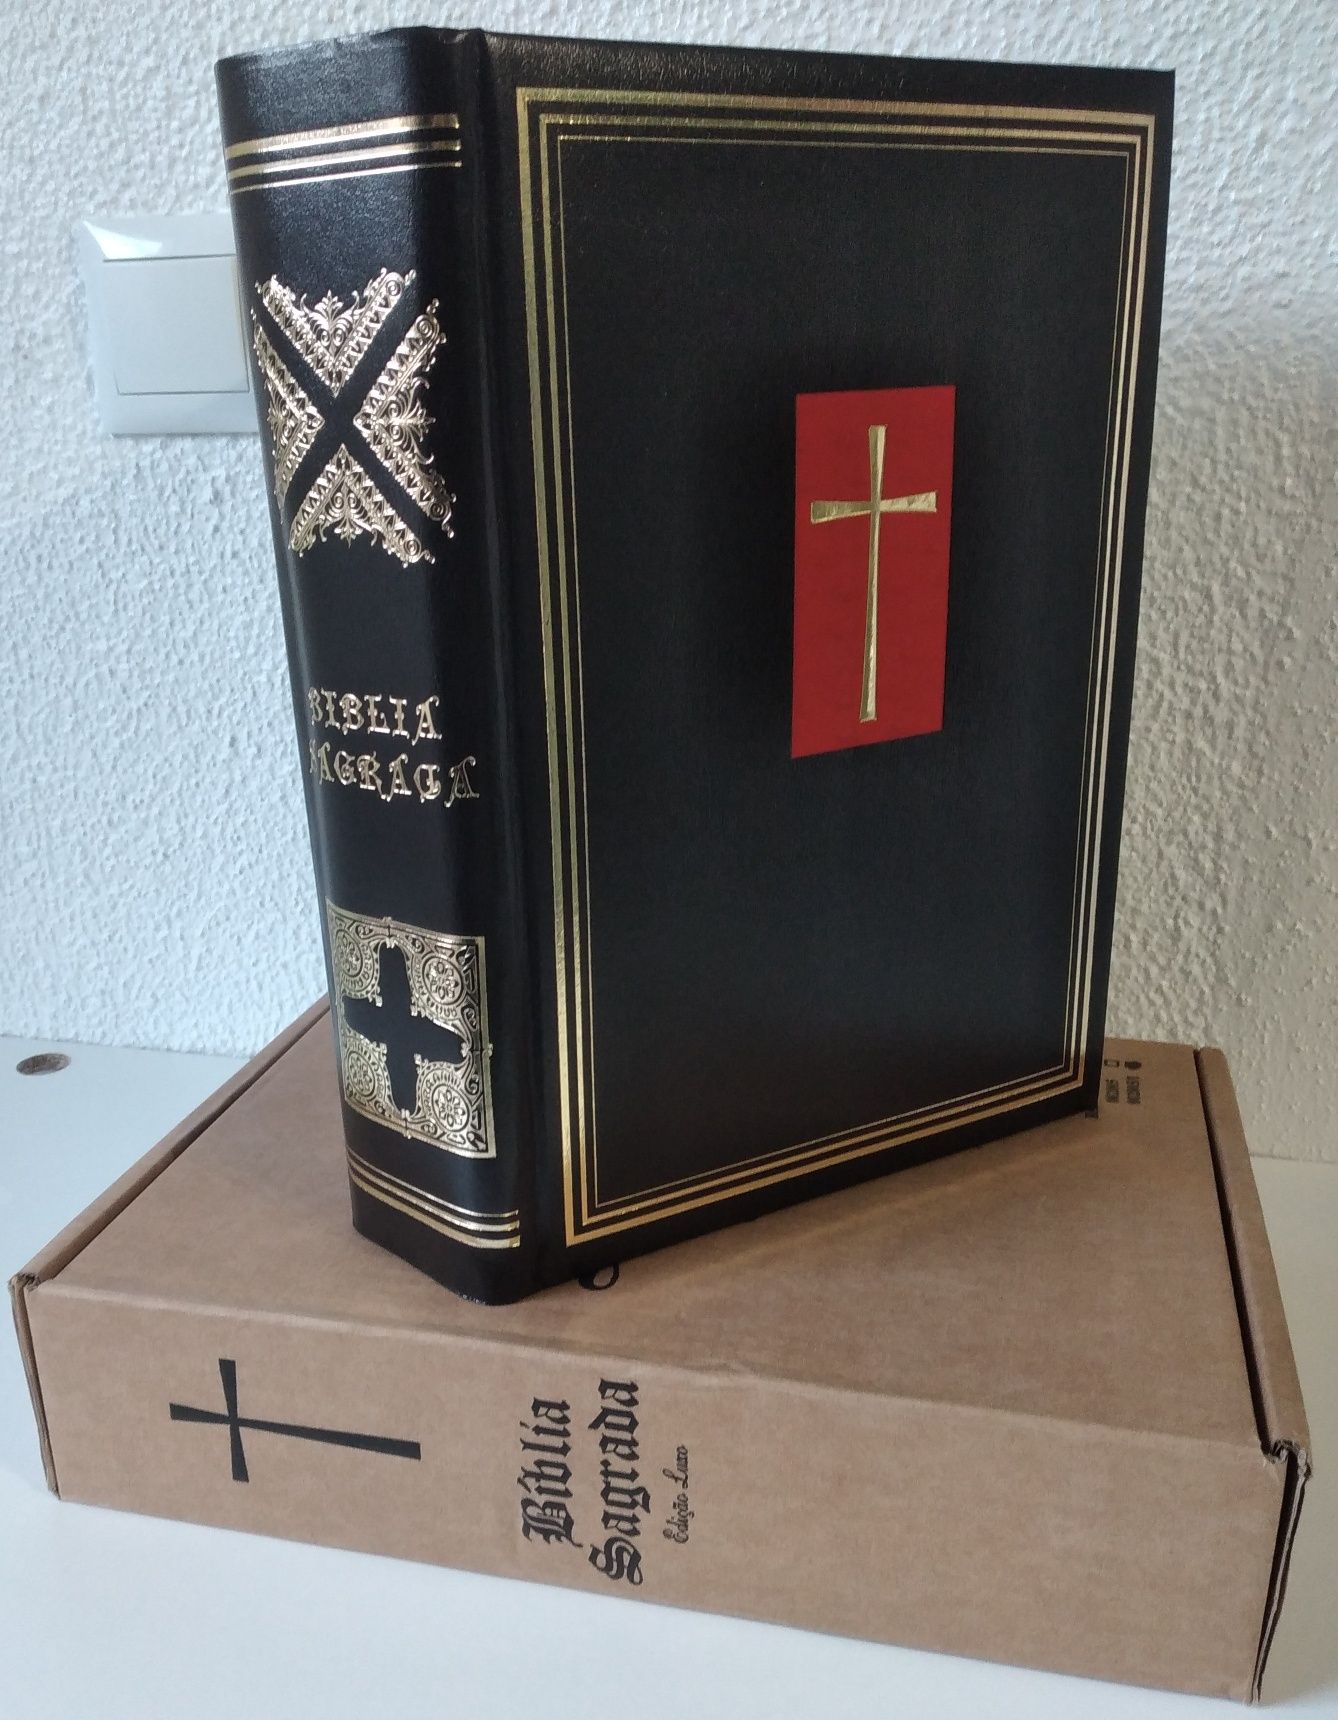 Bíblia Sagrada - livro novo na caixa original